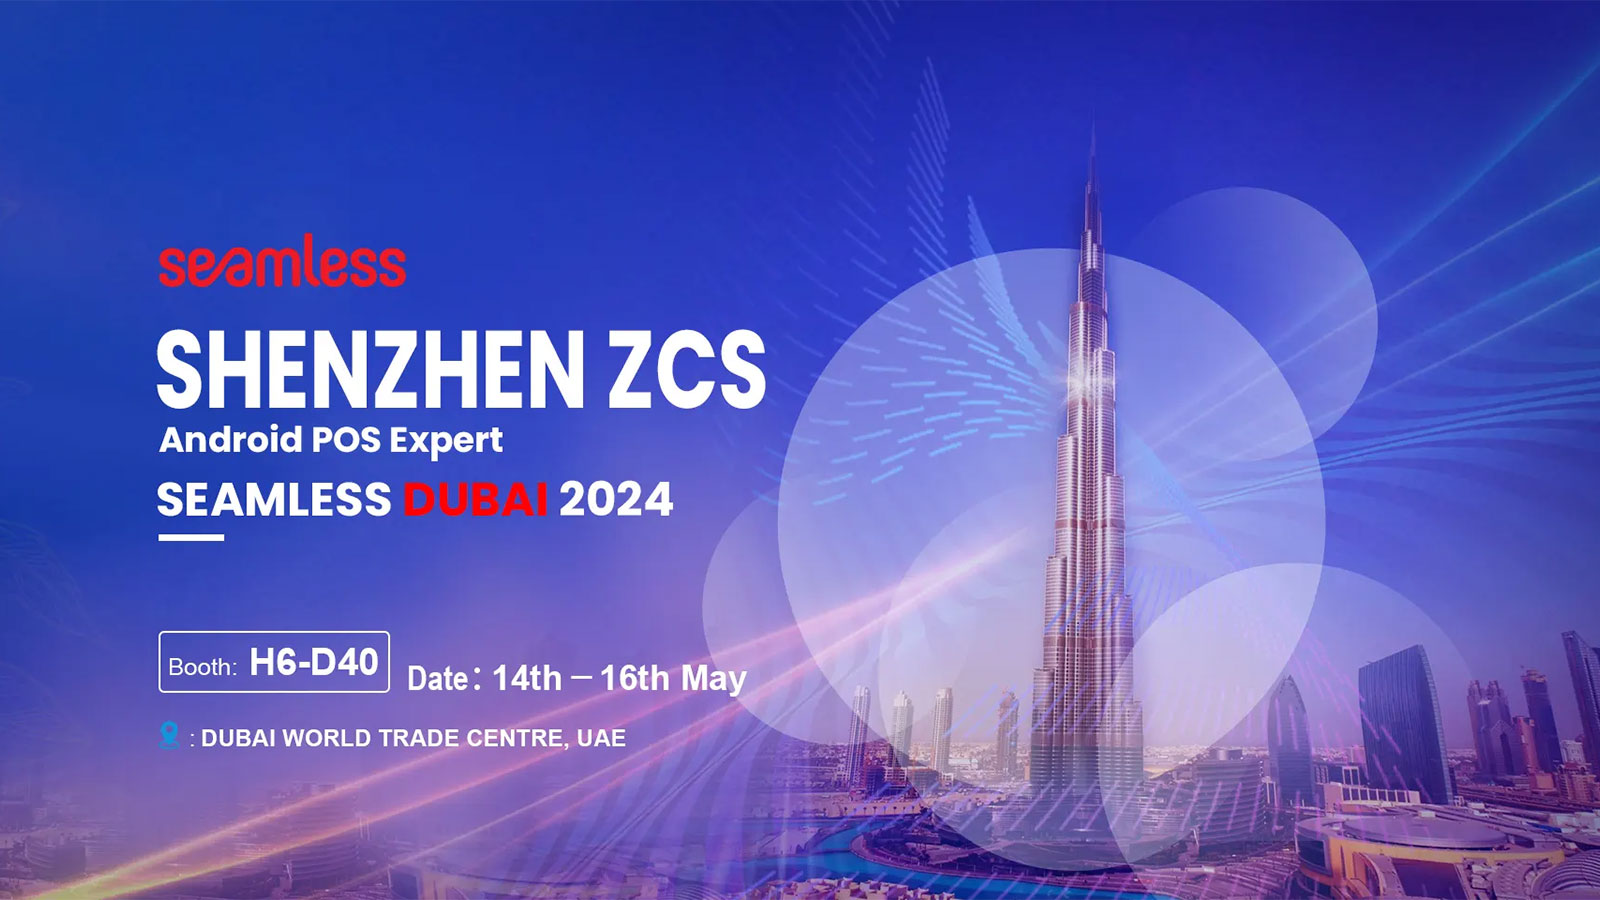 ZCS｜ZCS Dubai Exhibition Invitation May 14th to 16th